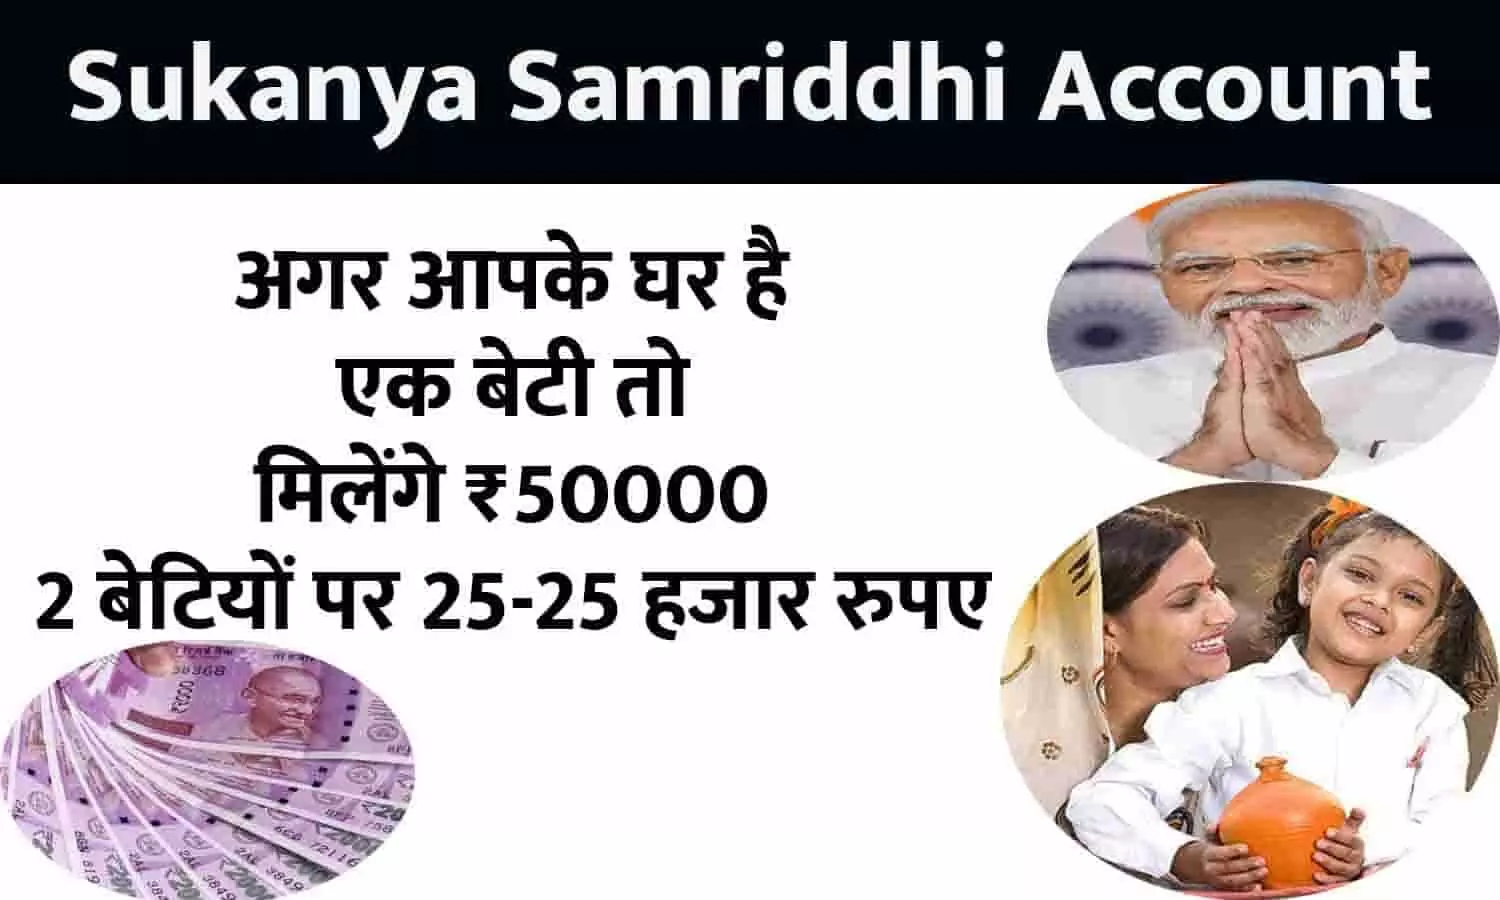 Sukanya Samriddhi Account Big Alert 2023: सरकार का ऐलान, एक बेटी तो मिलेंगे ₹50000, 2 बेटियों पर 25-25 हजार रुपए, तुरंत ध्यान दे